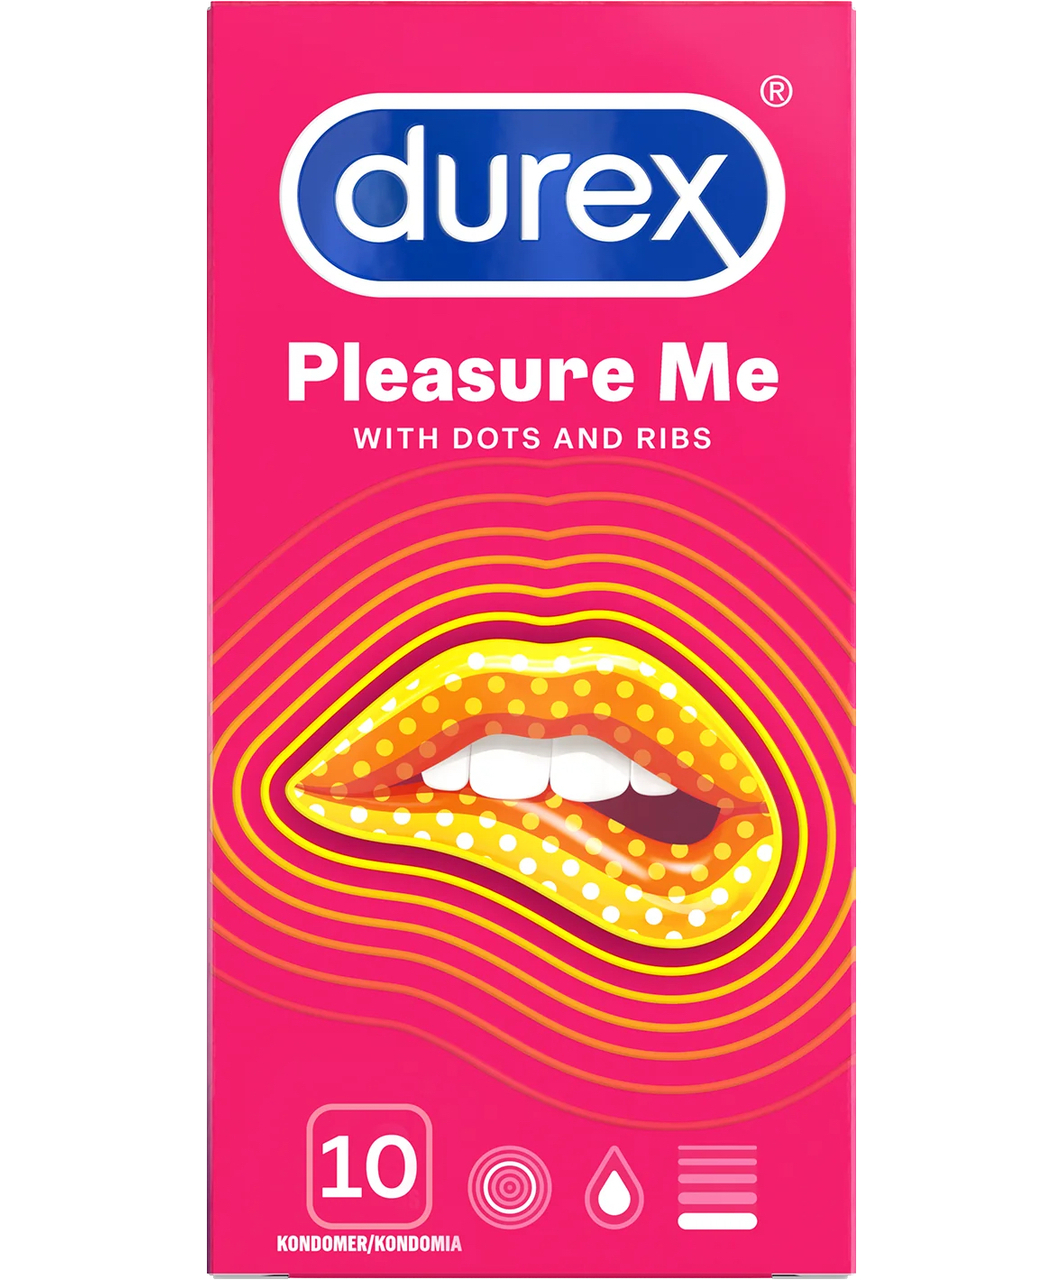 Durex Pleasure Me condoms (10 pcs)